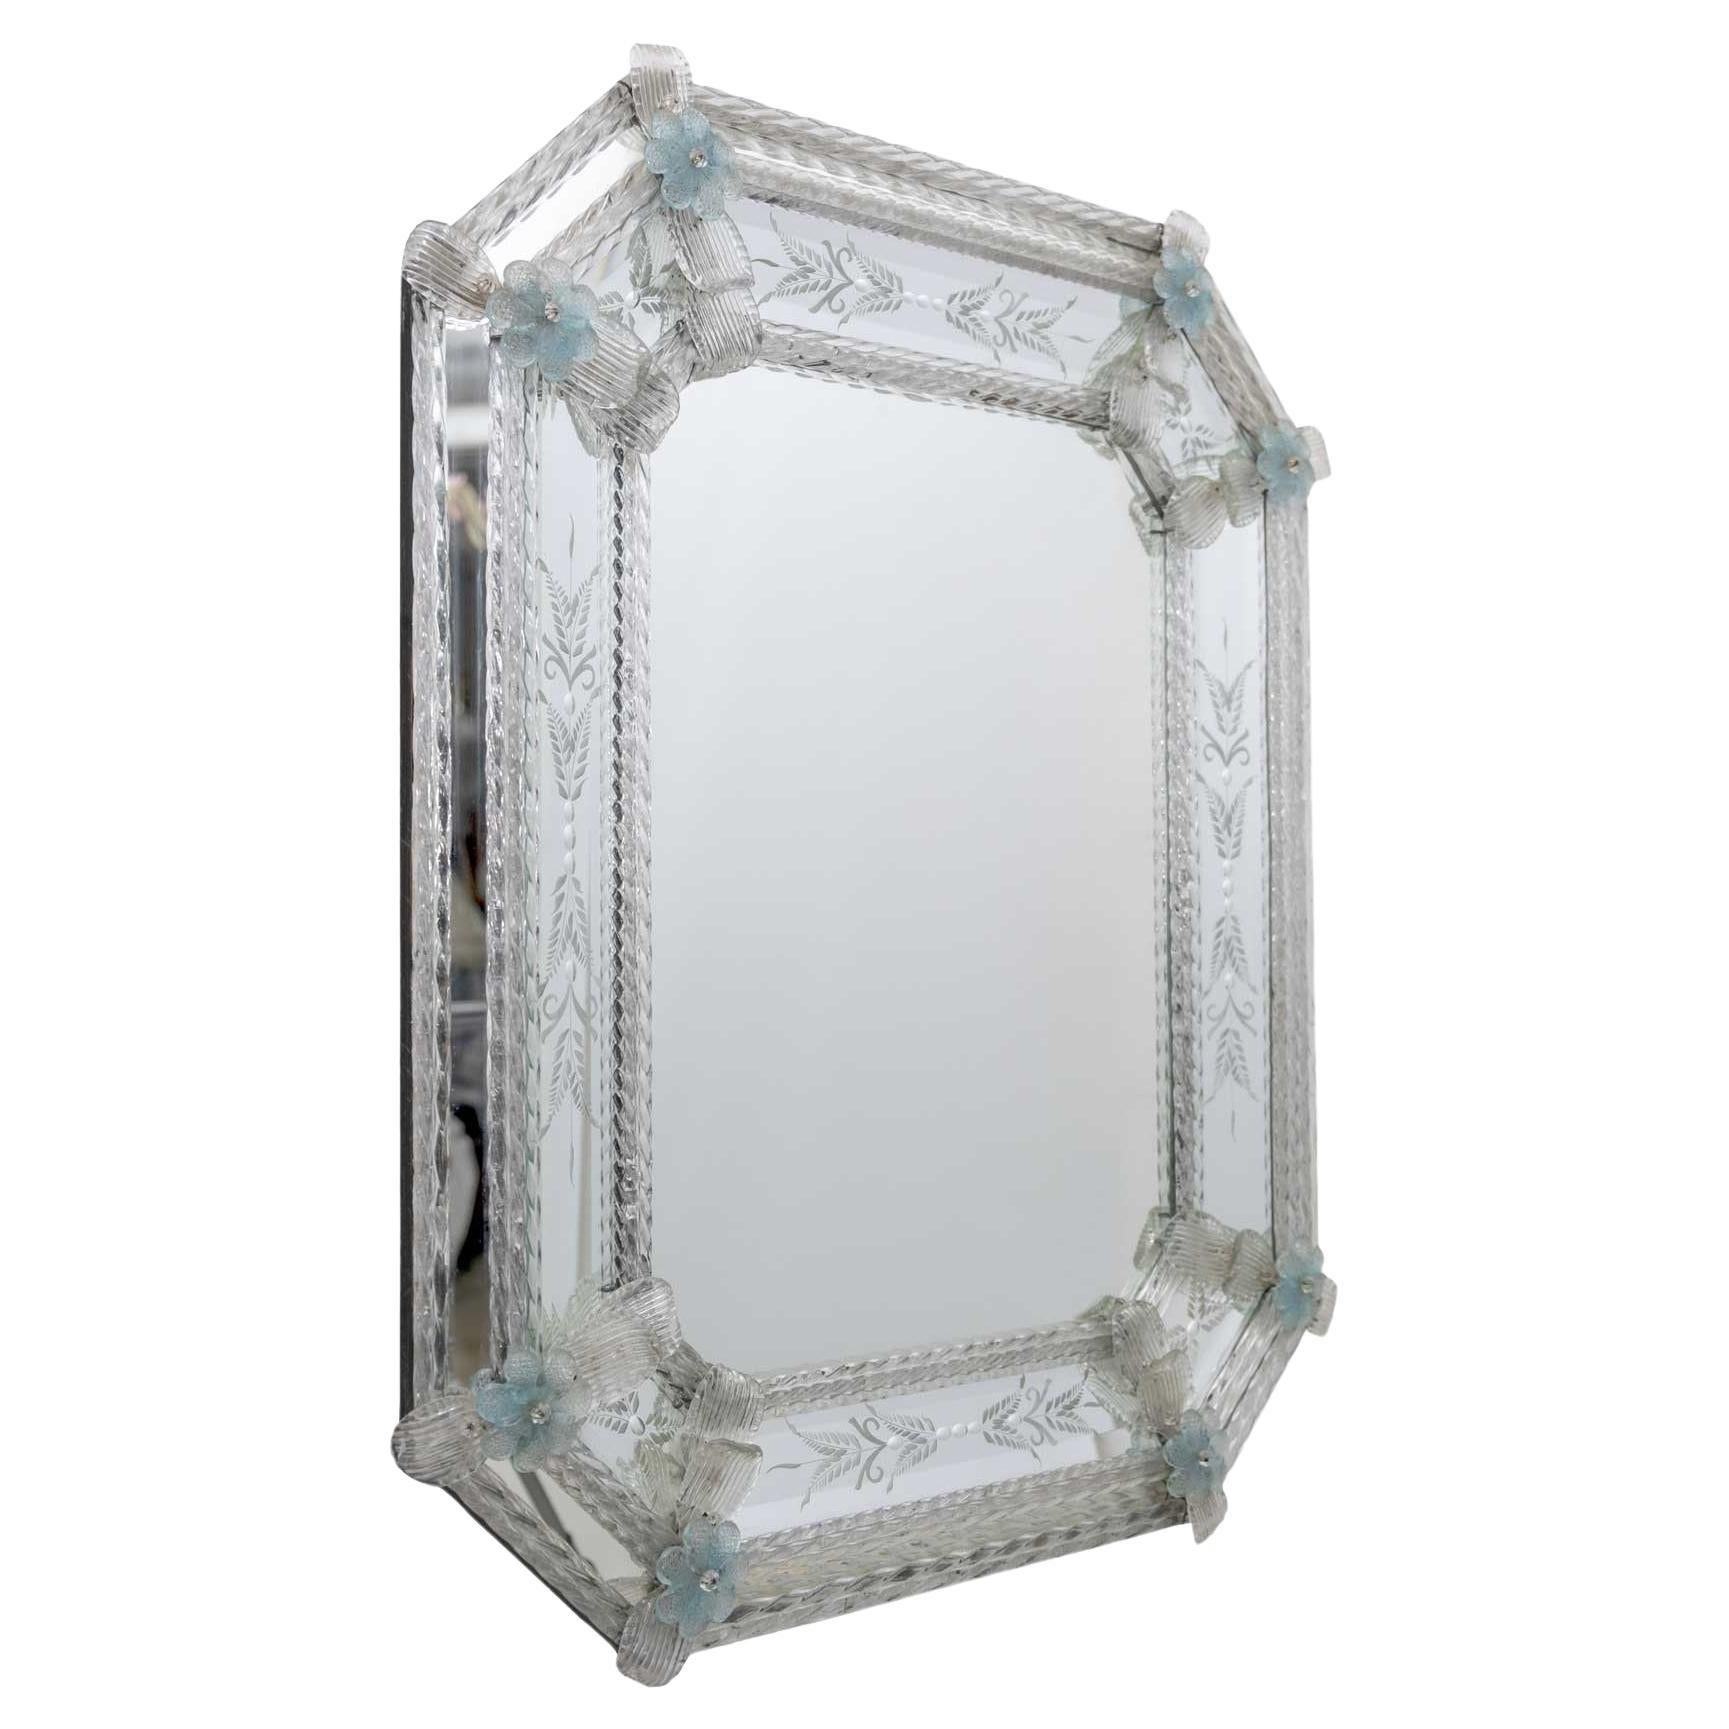 C'est un ravissant miroir vénitien classique avec un cadre formé par des baguettes et des boucles de cristal, les gravures qui ornent ce luxueux miroir ont été entièrement réalisées à la main, et les finitions composées de petites fleurs bleu clair